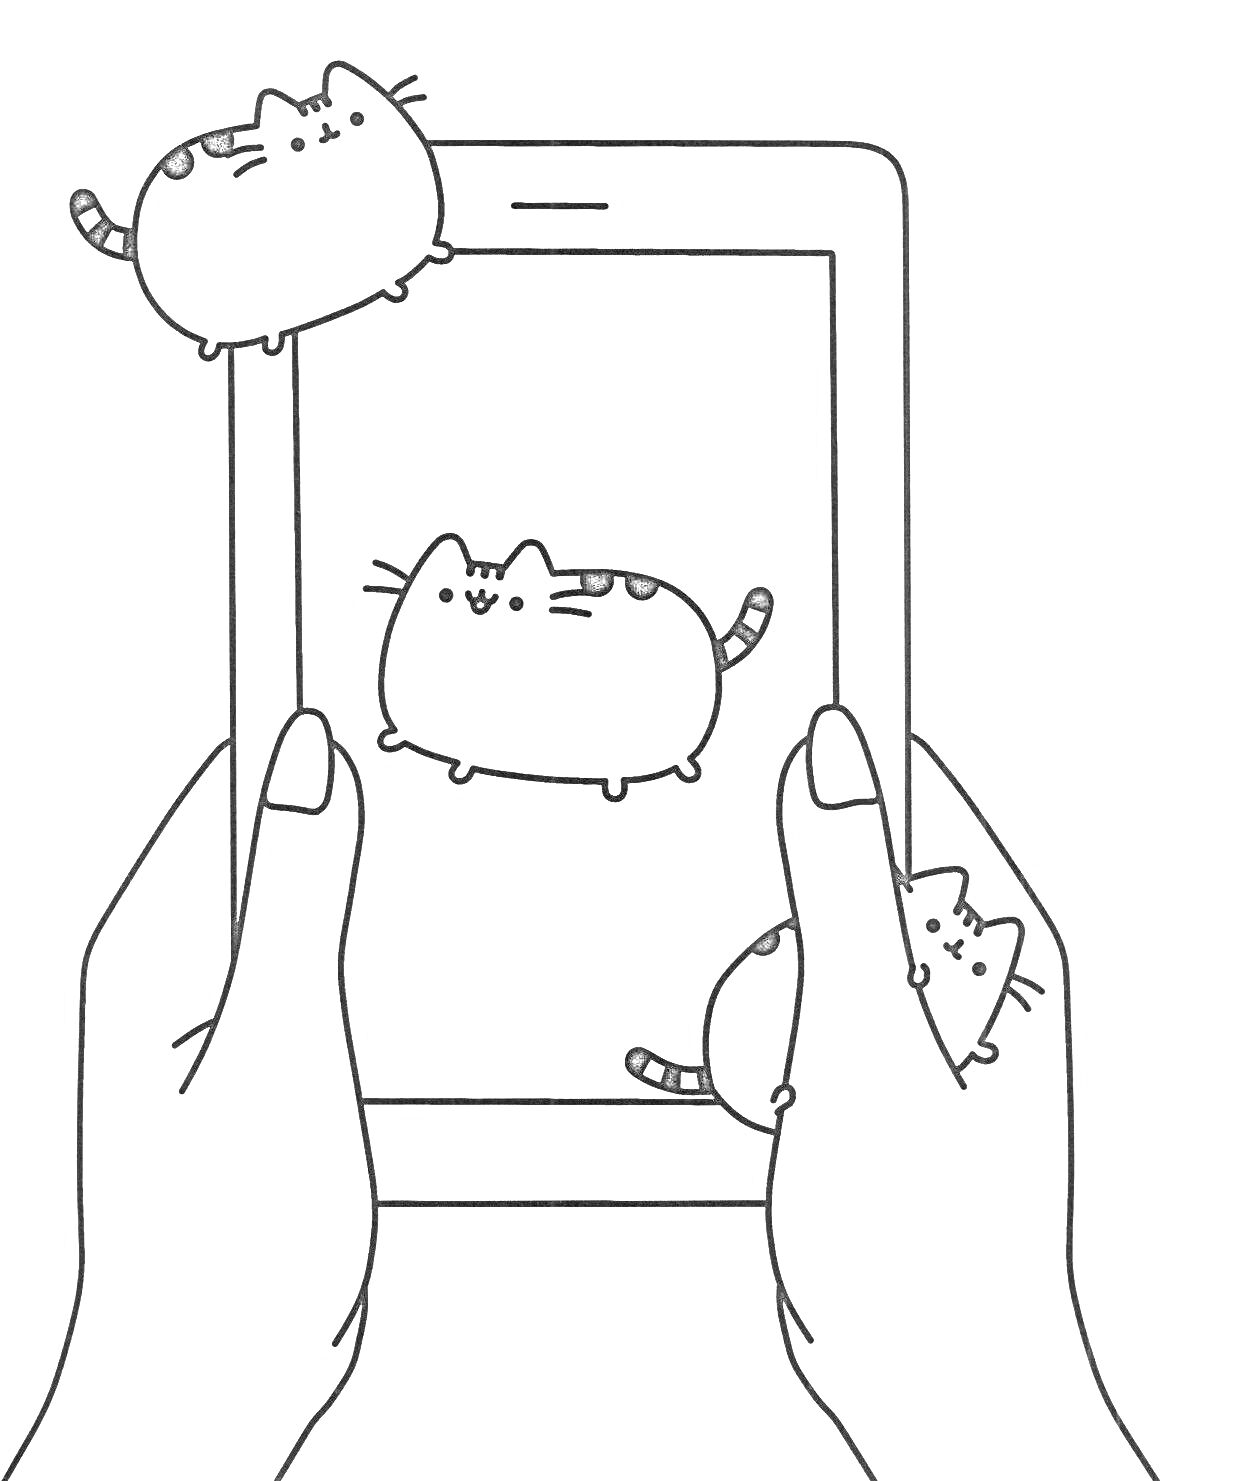 Руки, держащие планшет с изображением кота Пушина и кот Пушин снаружи планшета